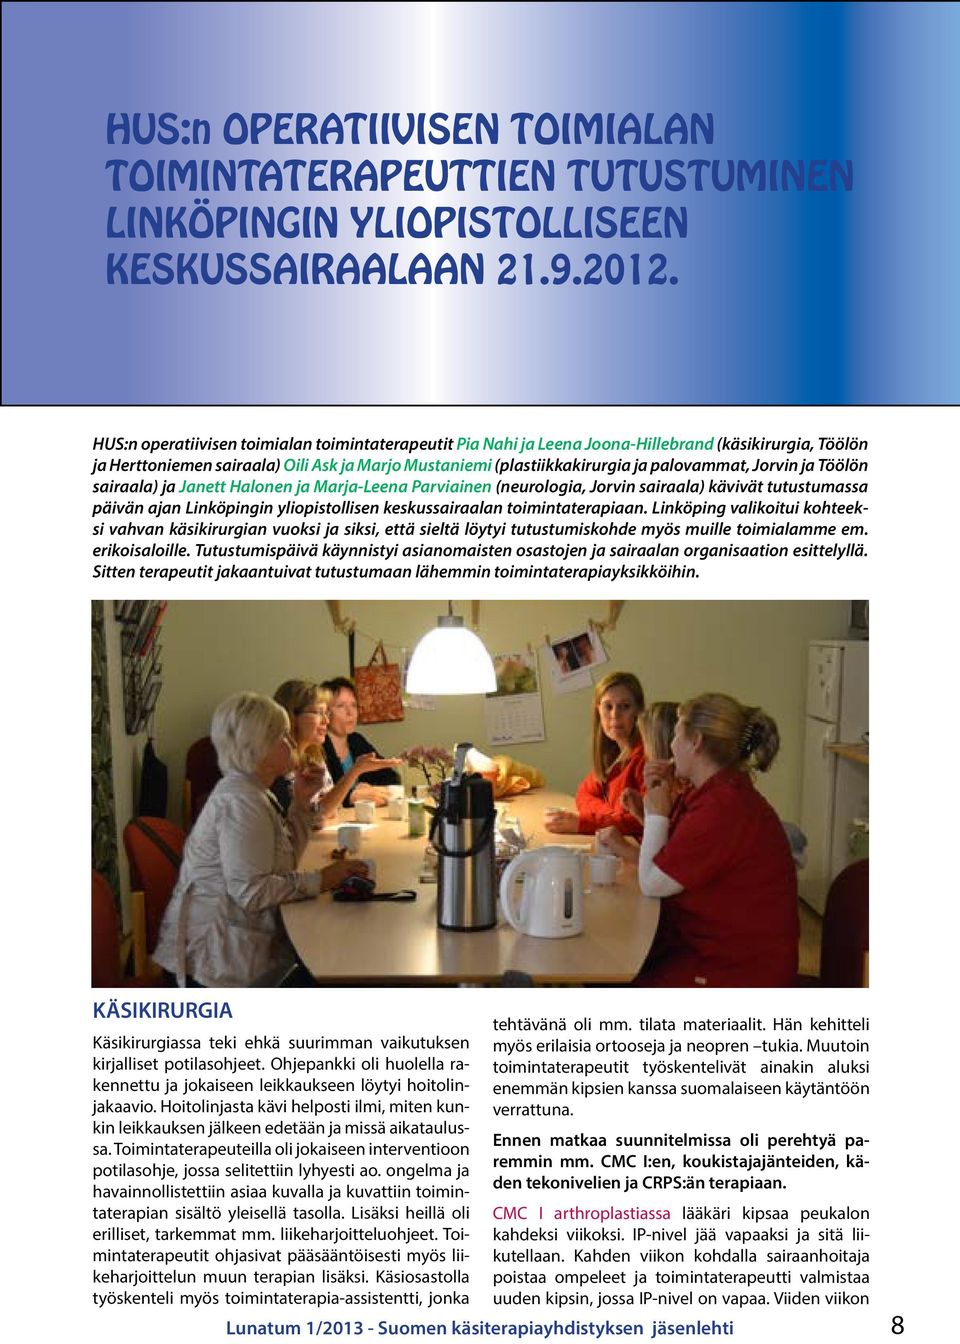 Jorvin ja Töölön sairaala) ja Janett Halonen ja Marja-Leena Parviainen (neurologia, Jorvin sairaala) kävivät tutustumassa päivän ajan Linköpingin yliopistollisen keskussairaalan toimintaterapiaan.